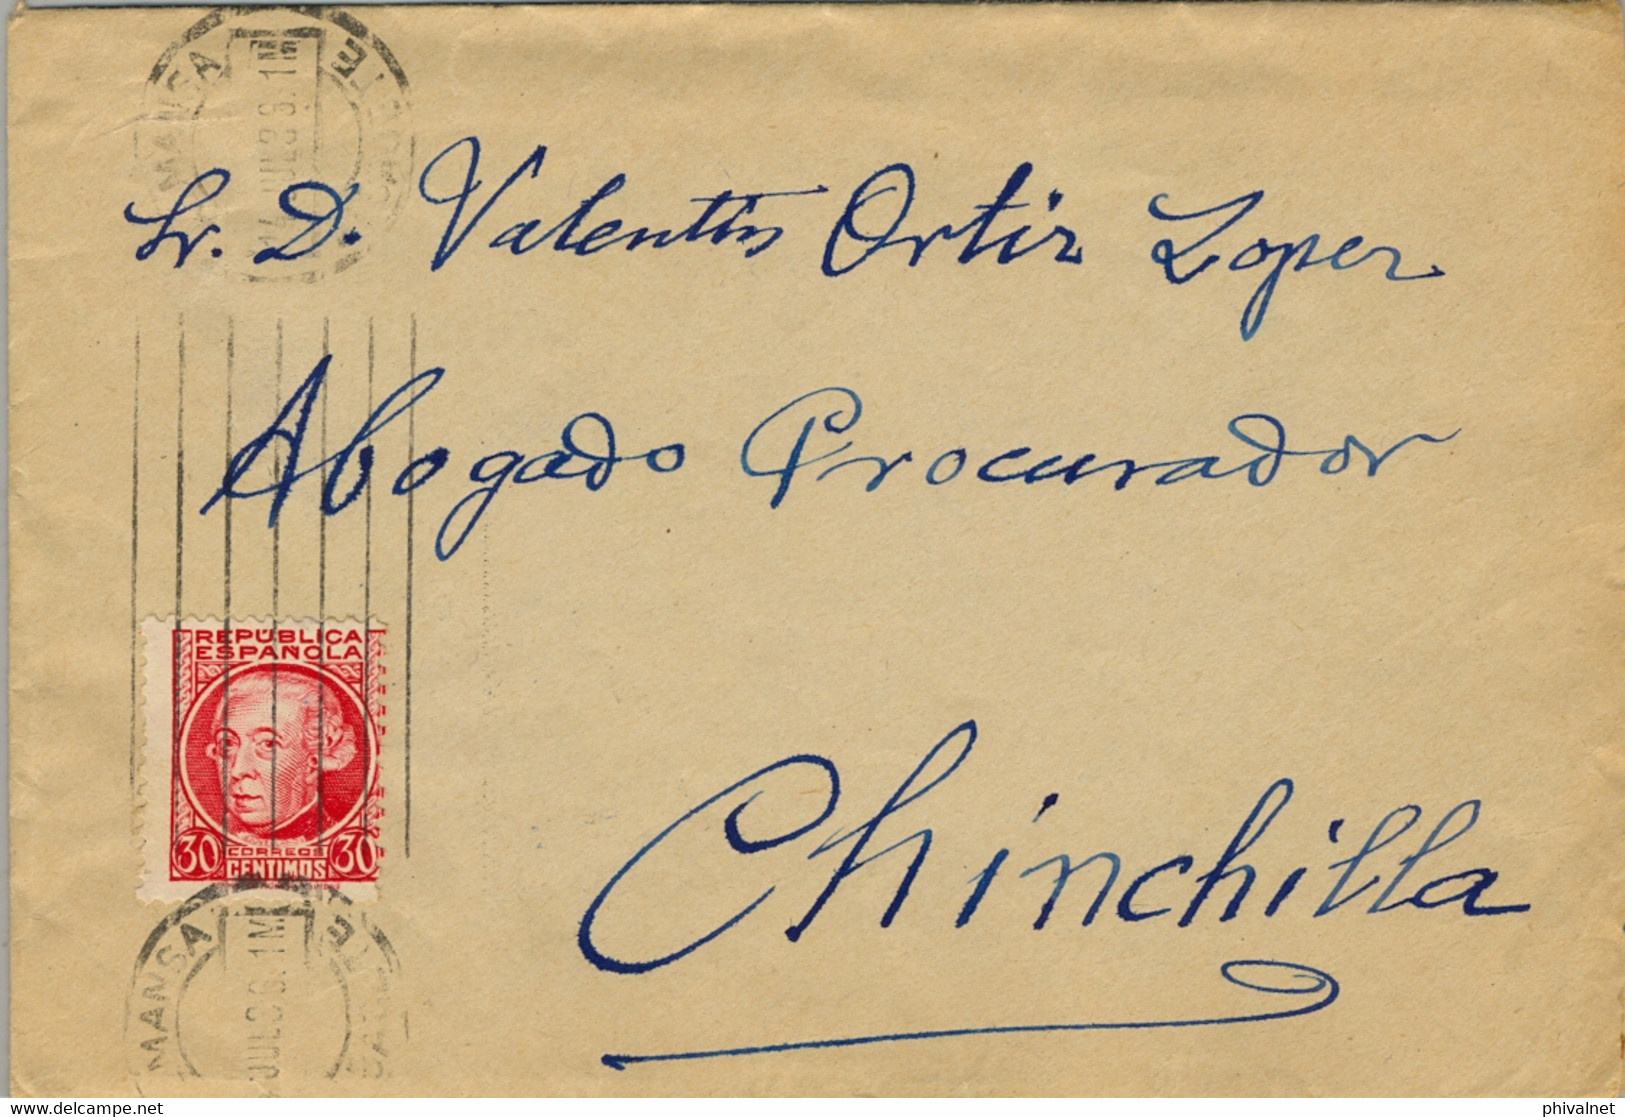 1936 ALBACETE , SOBRE CIRCULADO ENTRE ALMANSA Y CHINCHILLA ,  LLEGADA EN AZUL AL DORSO - Lettres & Documents